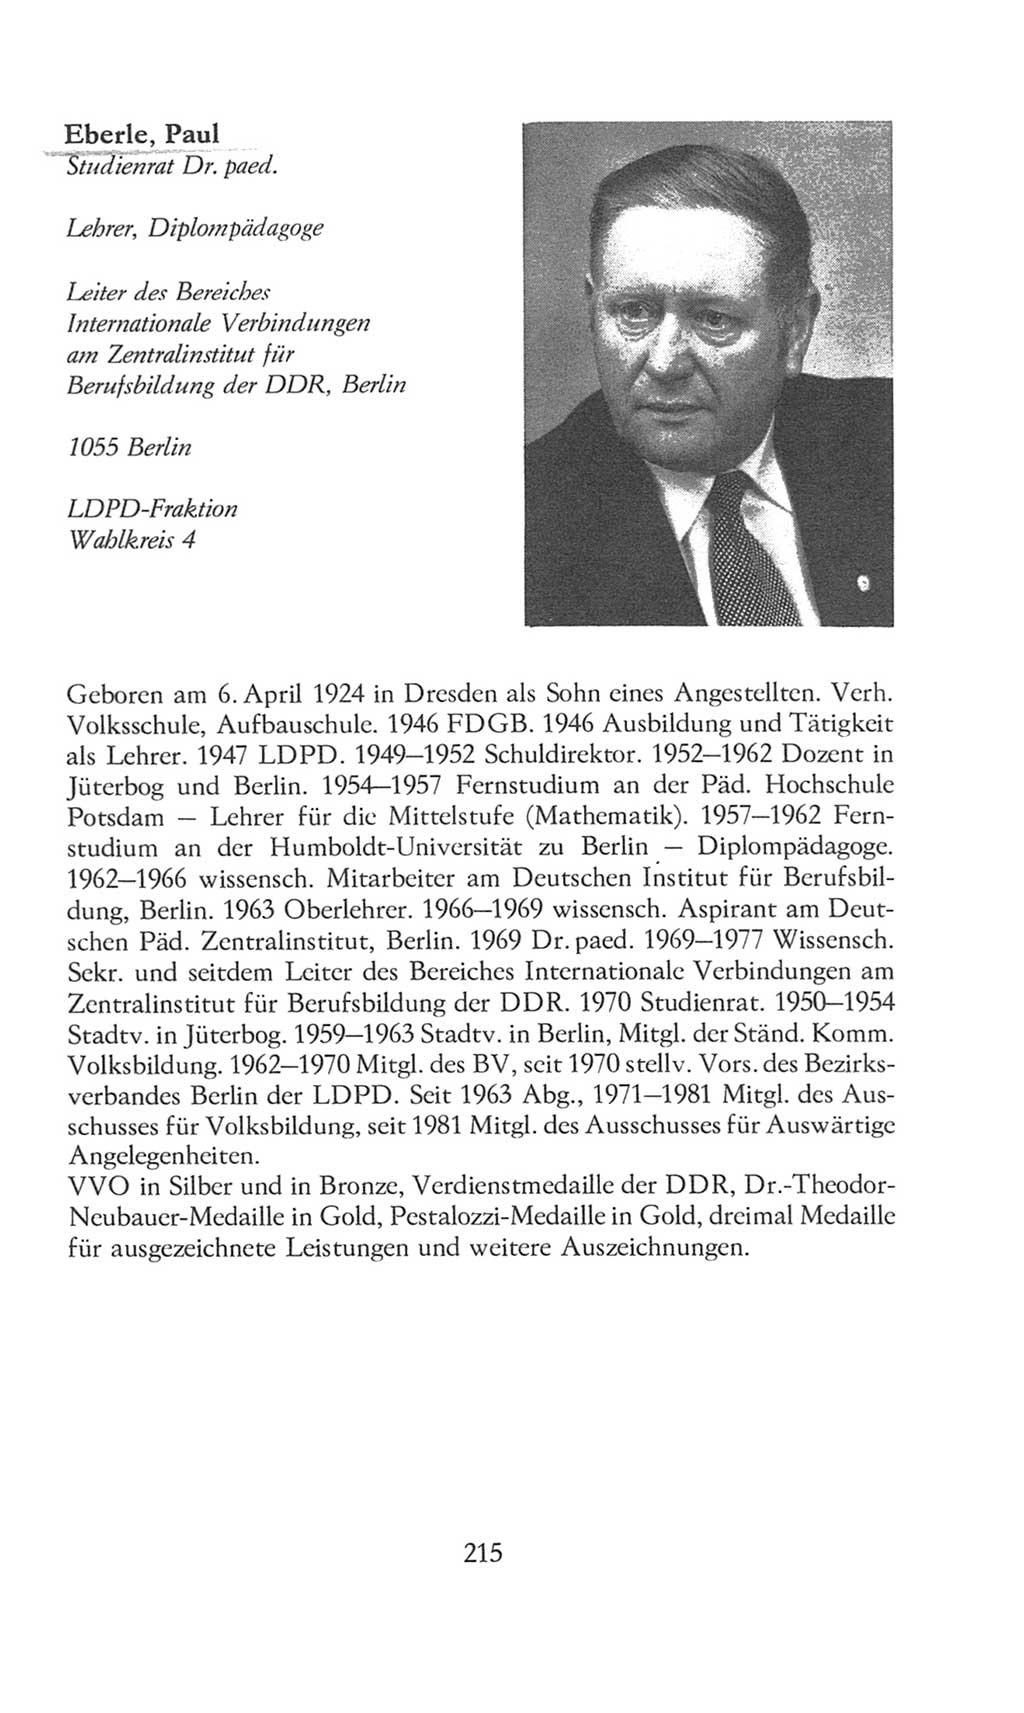 Volkskammer (VK) der Deutschen Demokratischen Republik (DDR), 8. Wahlperiode 1981-1986, Seite 215 (VK. DDR 8. WP. 1981-1986, S. 215)